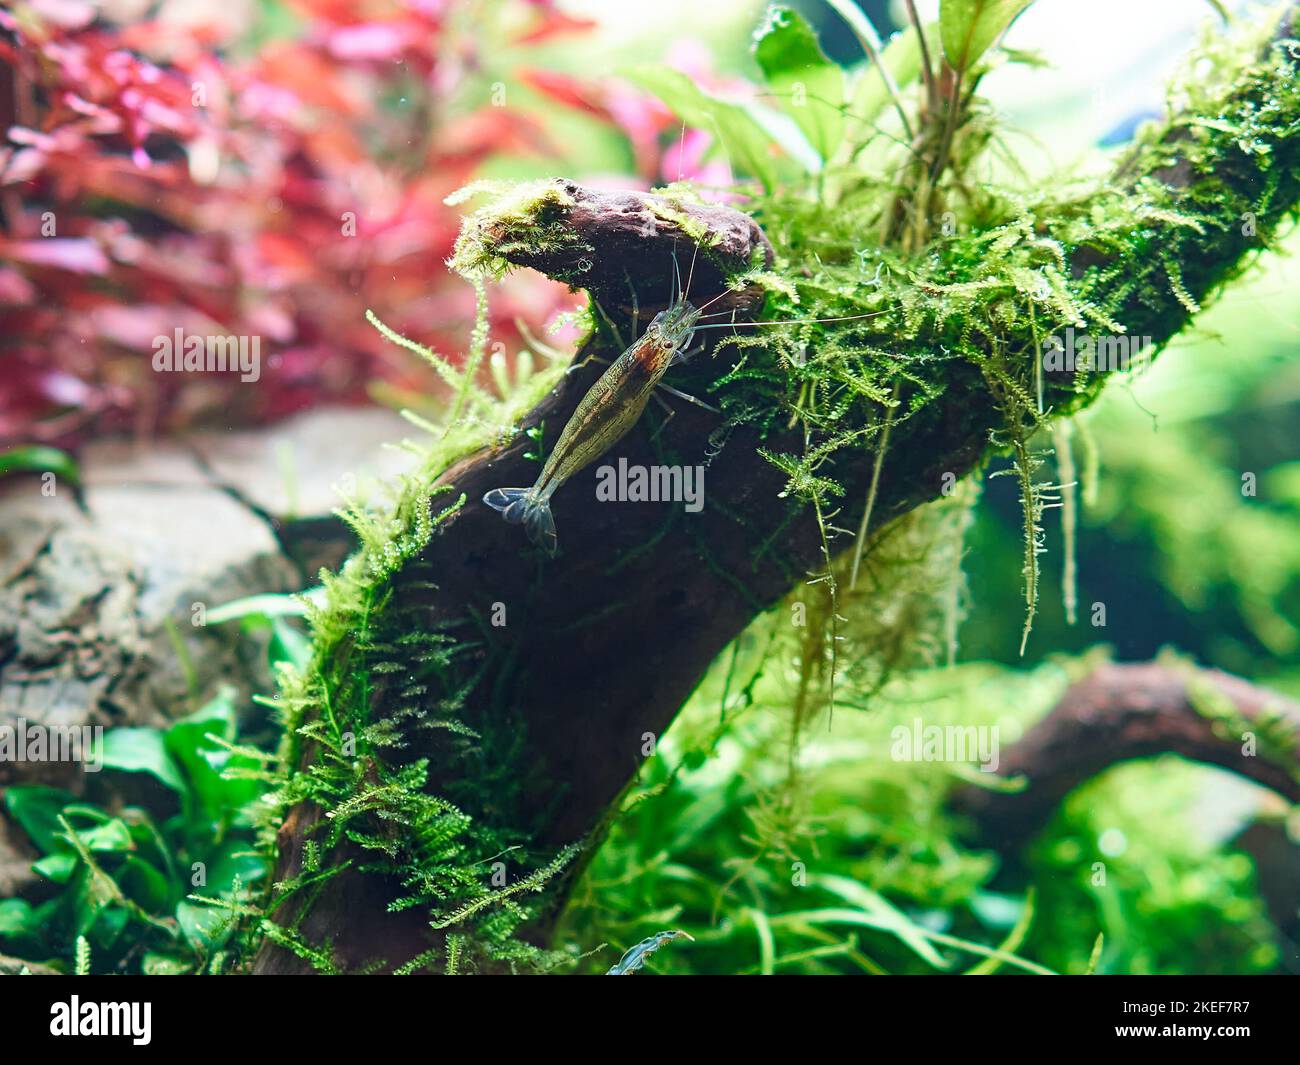 Amano Garnelen (Caridina multidentata) sitzt auf der großen Wurzel im Aquarium Aquascape. Nahaufnahme. Stockfoto